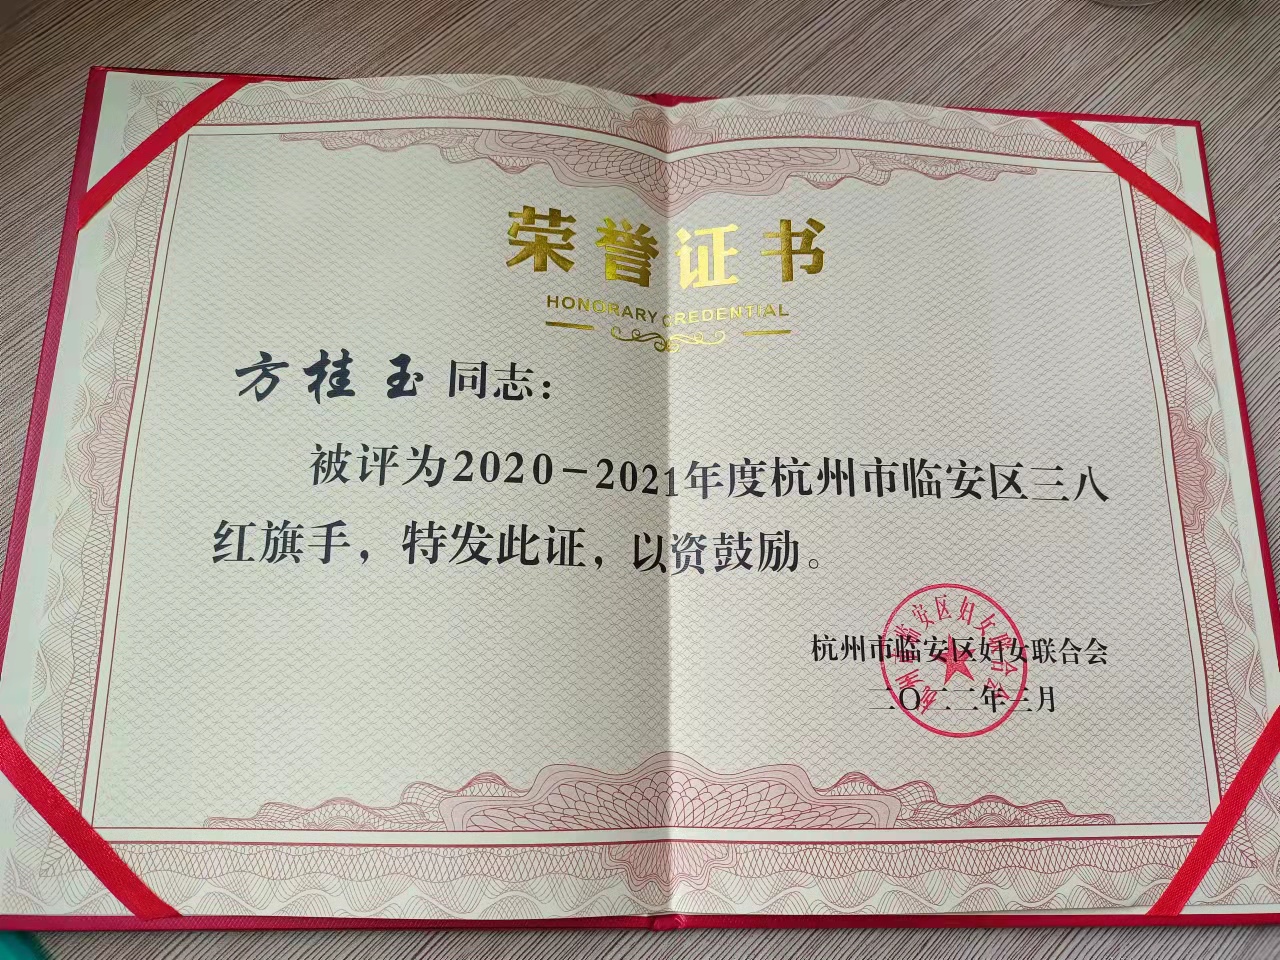 巾帼不让须眉——我司方桂玉荣获2020-2021年度杭州市临安区“三八红旗手”称号